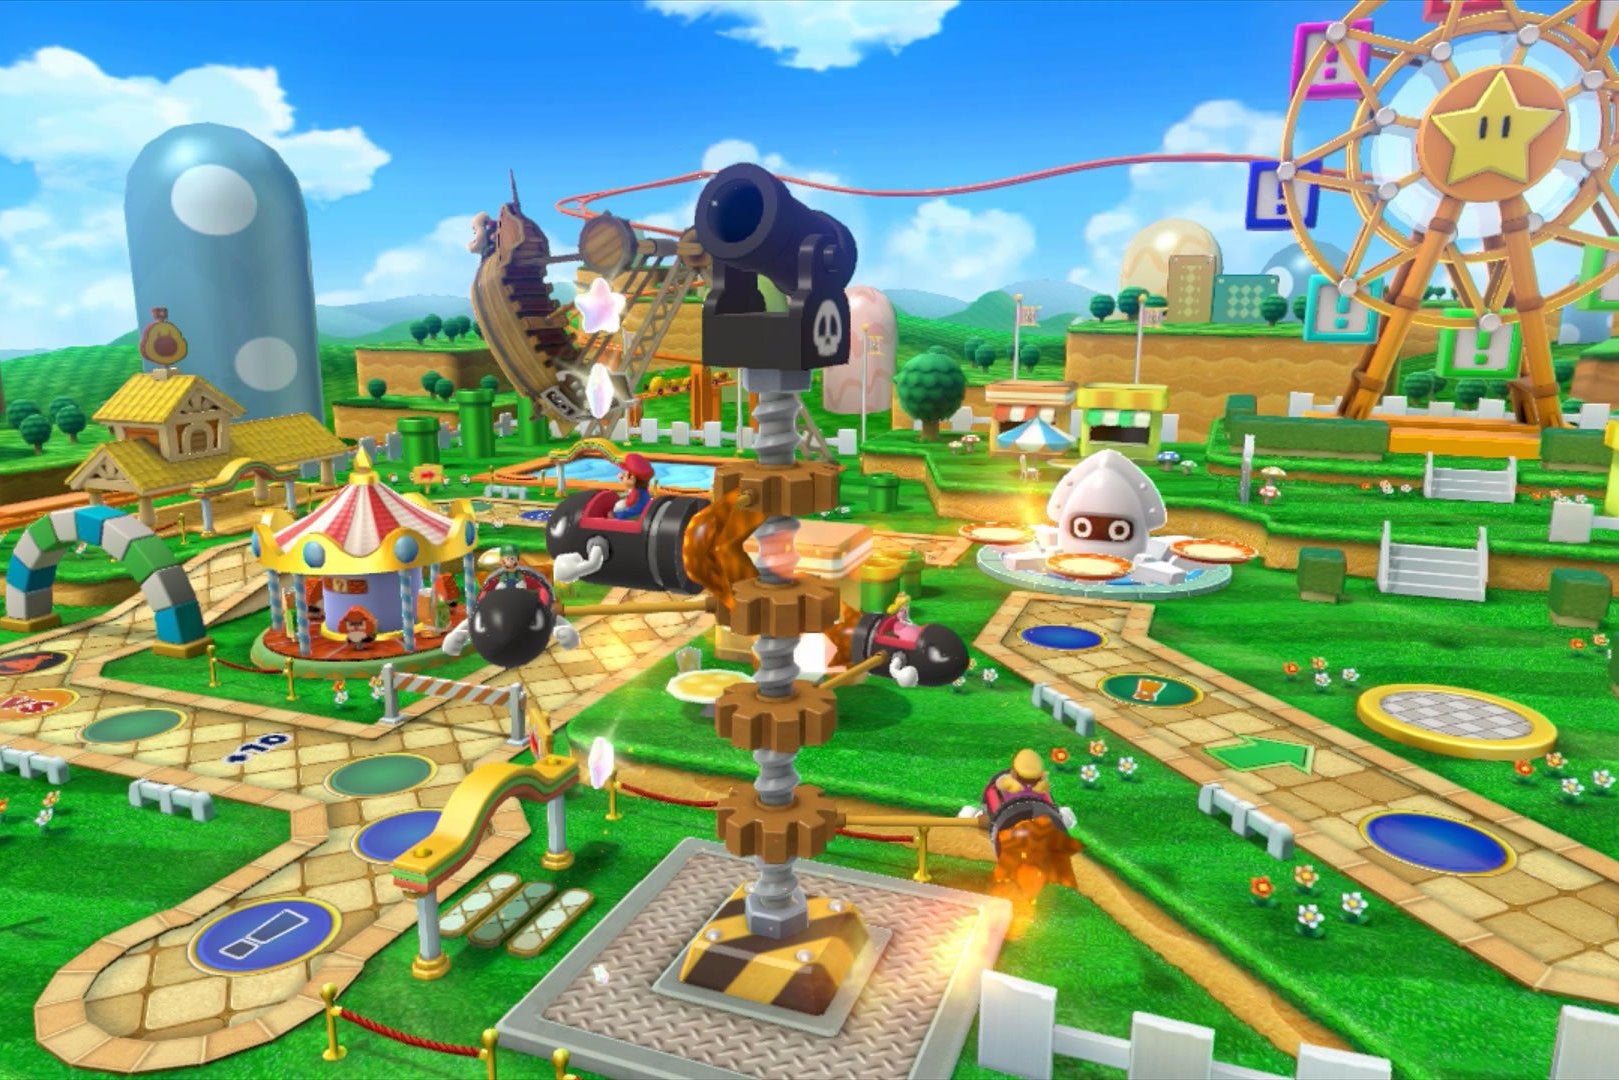 Immagine di Pubblicato il trailer di lancio di Mario Party 10